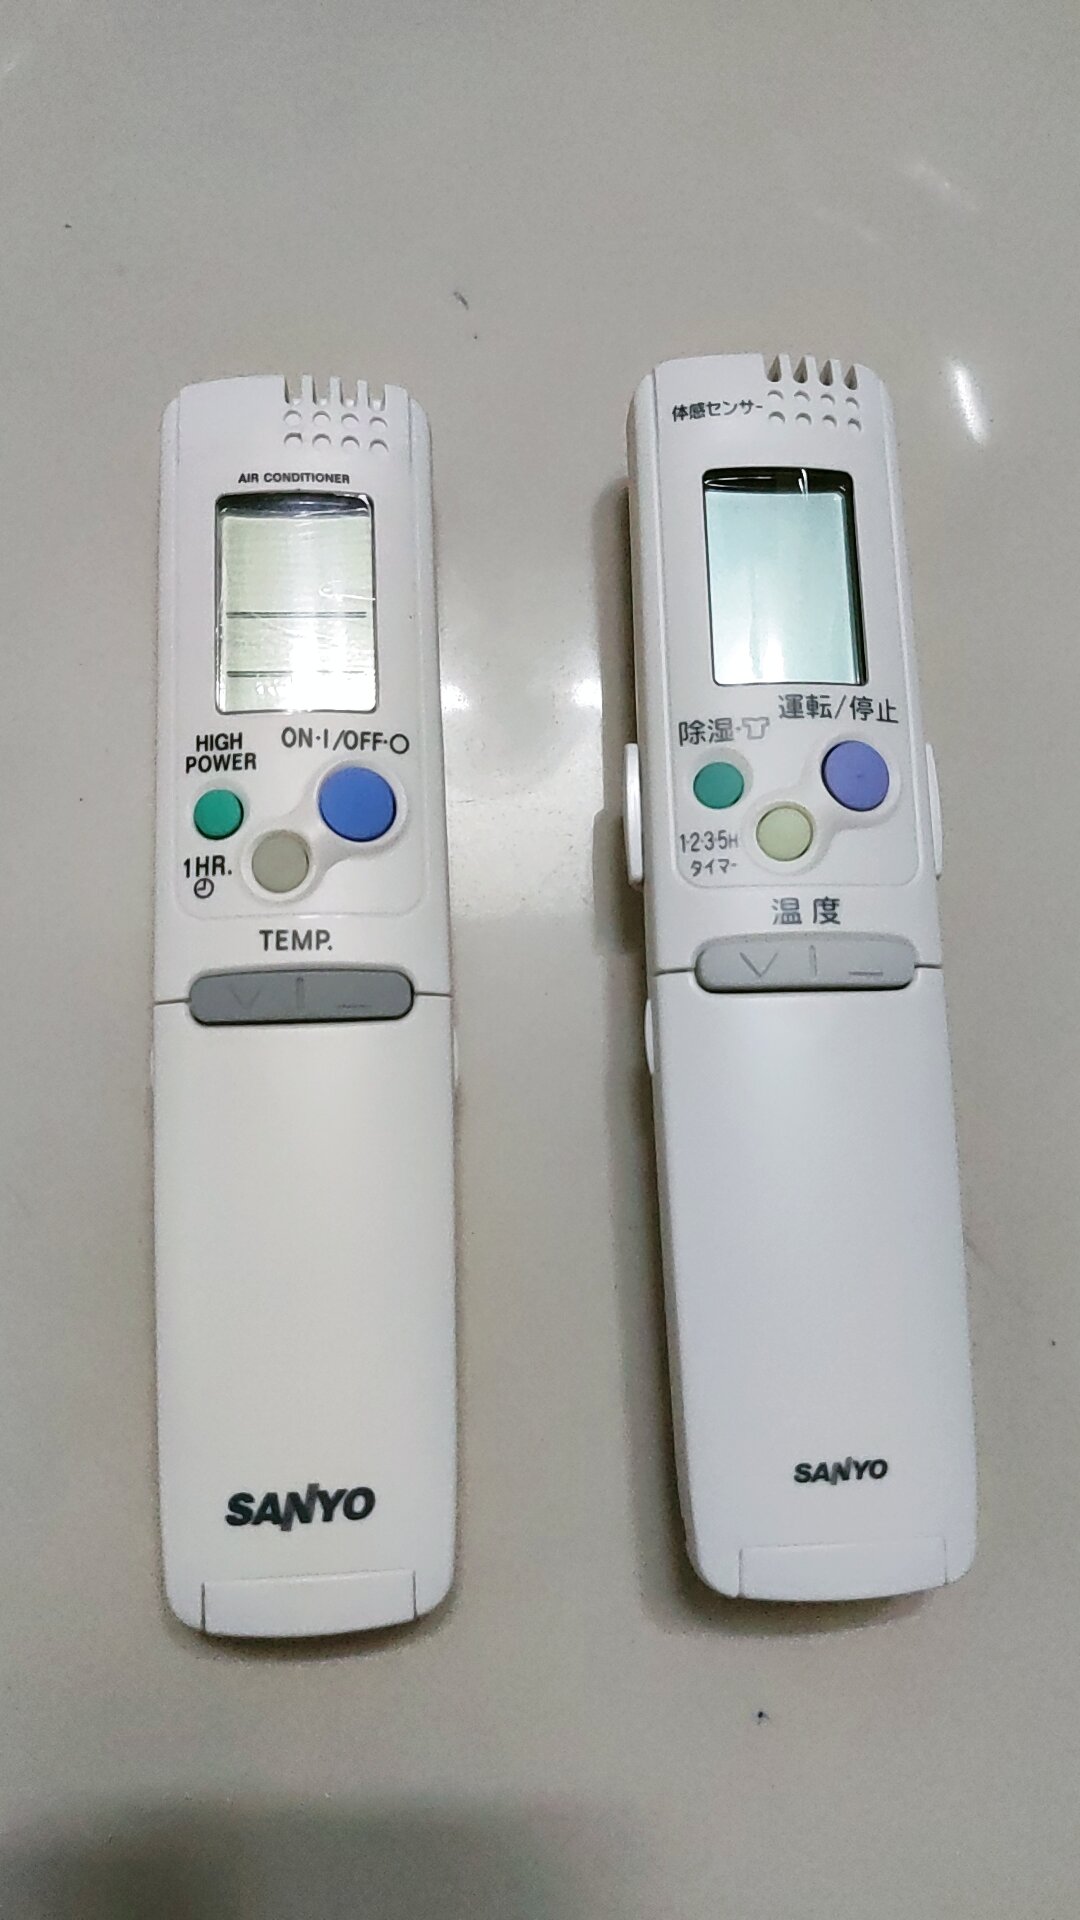 [HCM]remote máy lạnh sanyo một đèn hồng ngoại hai đèn hồng ngoại